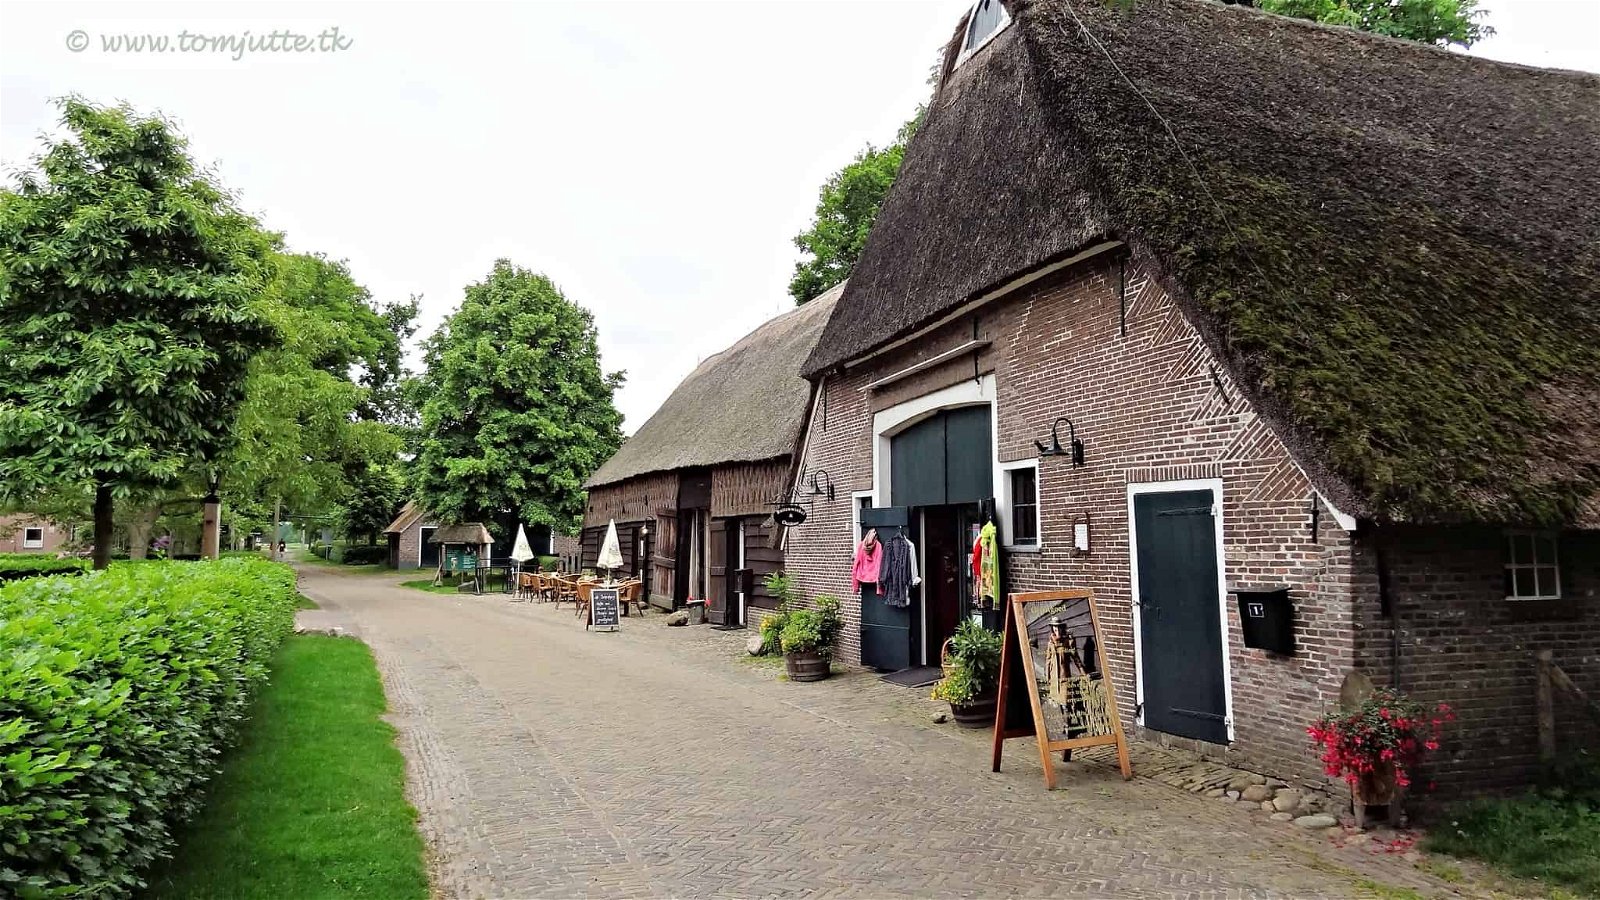 Huisjes langs een weggetje in Orvelte, een van de mooiste Nederlandse dorpjes.